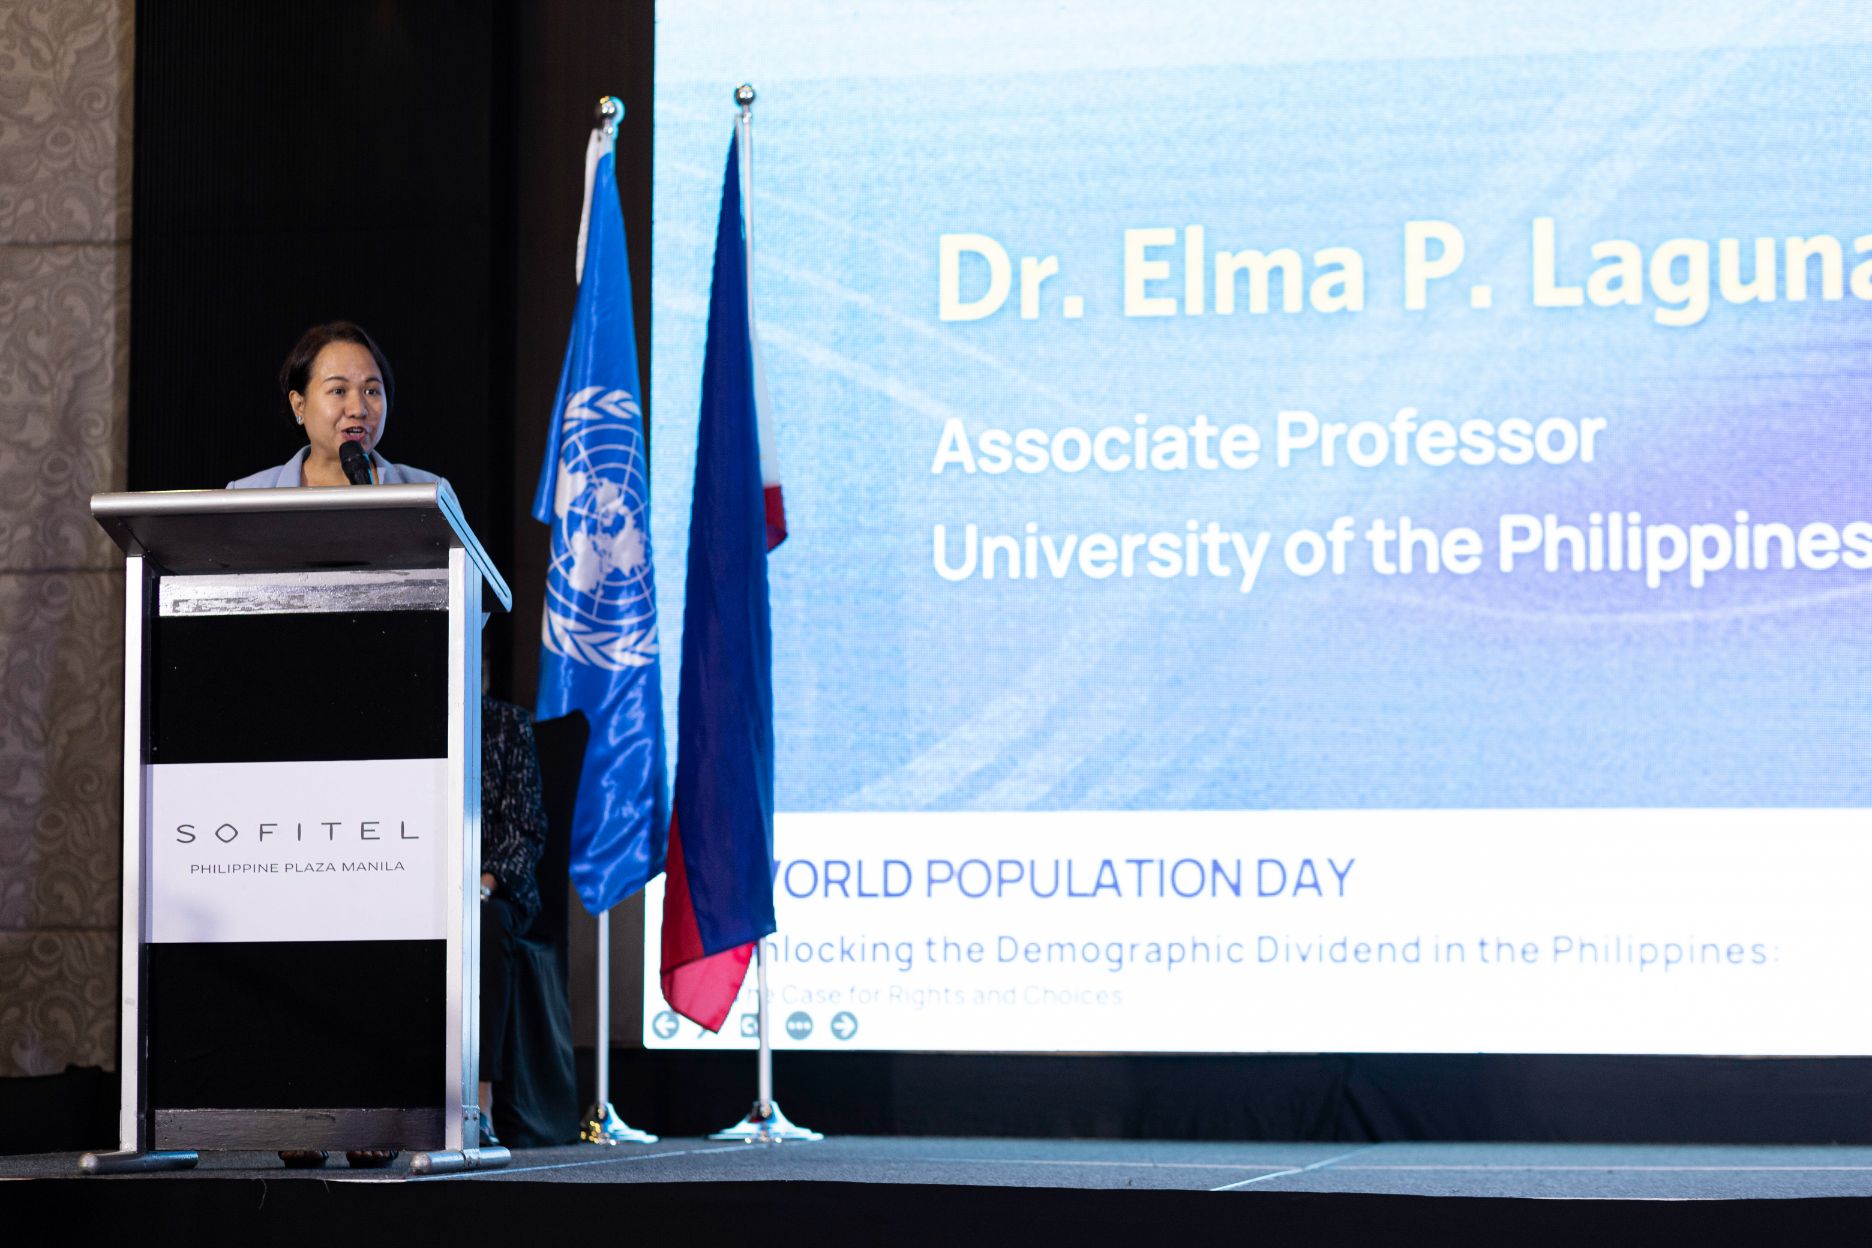 University of the Philippines Population Institute’s Associate Professor Dr. Elma P. Laguna